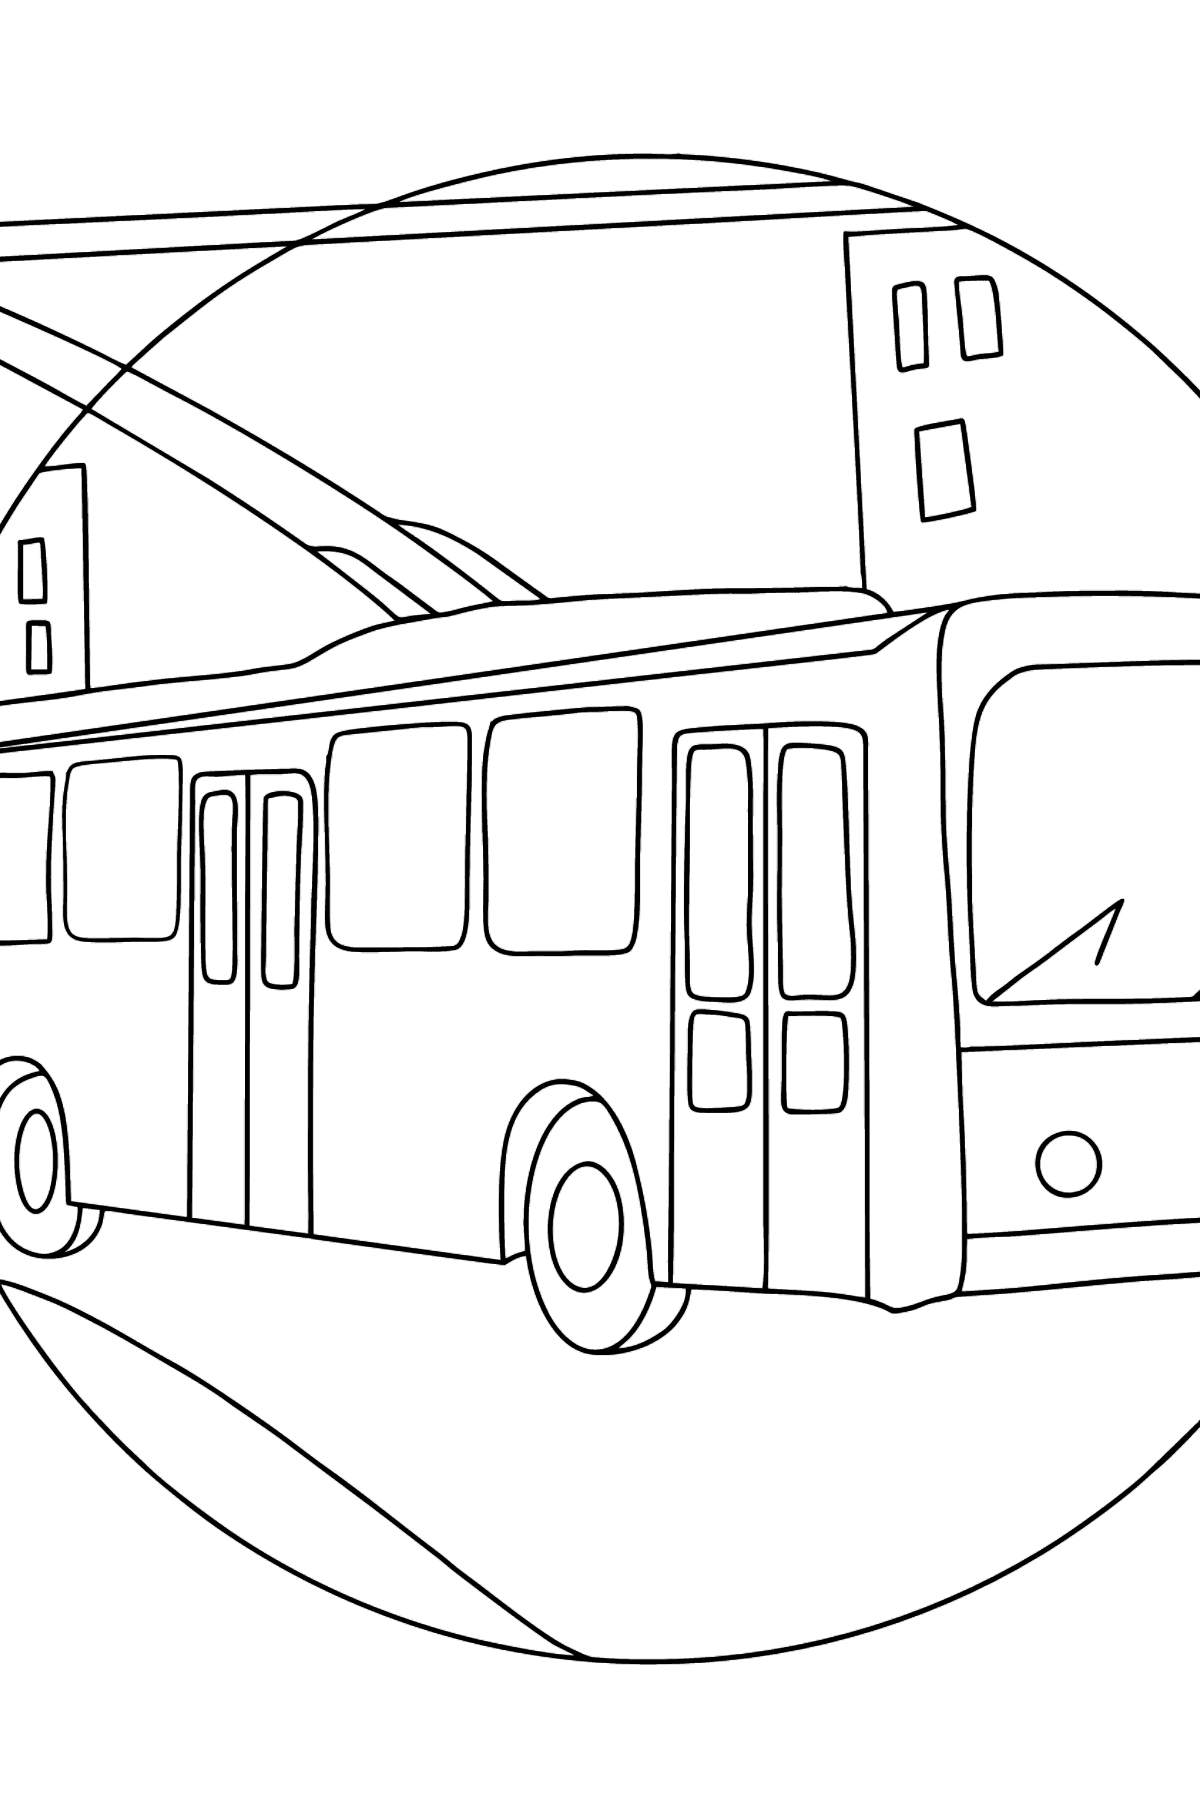 Tegning til fargelegging Trolleybuss - Tegninger til fargelegging for barn